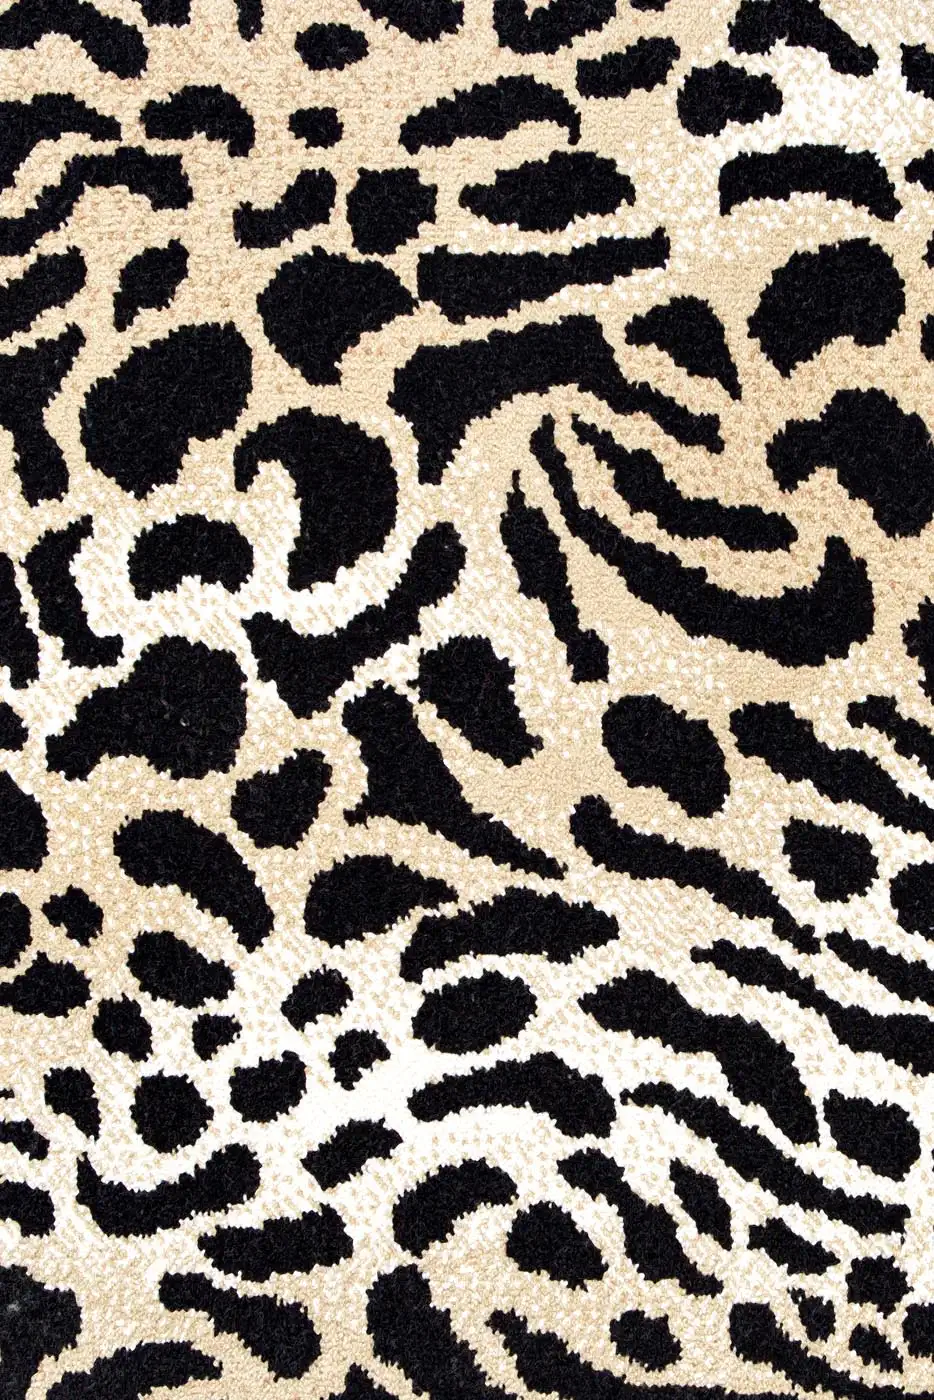 Carpet - Moquette Leopard by Pinton